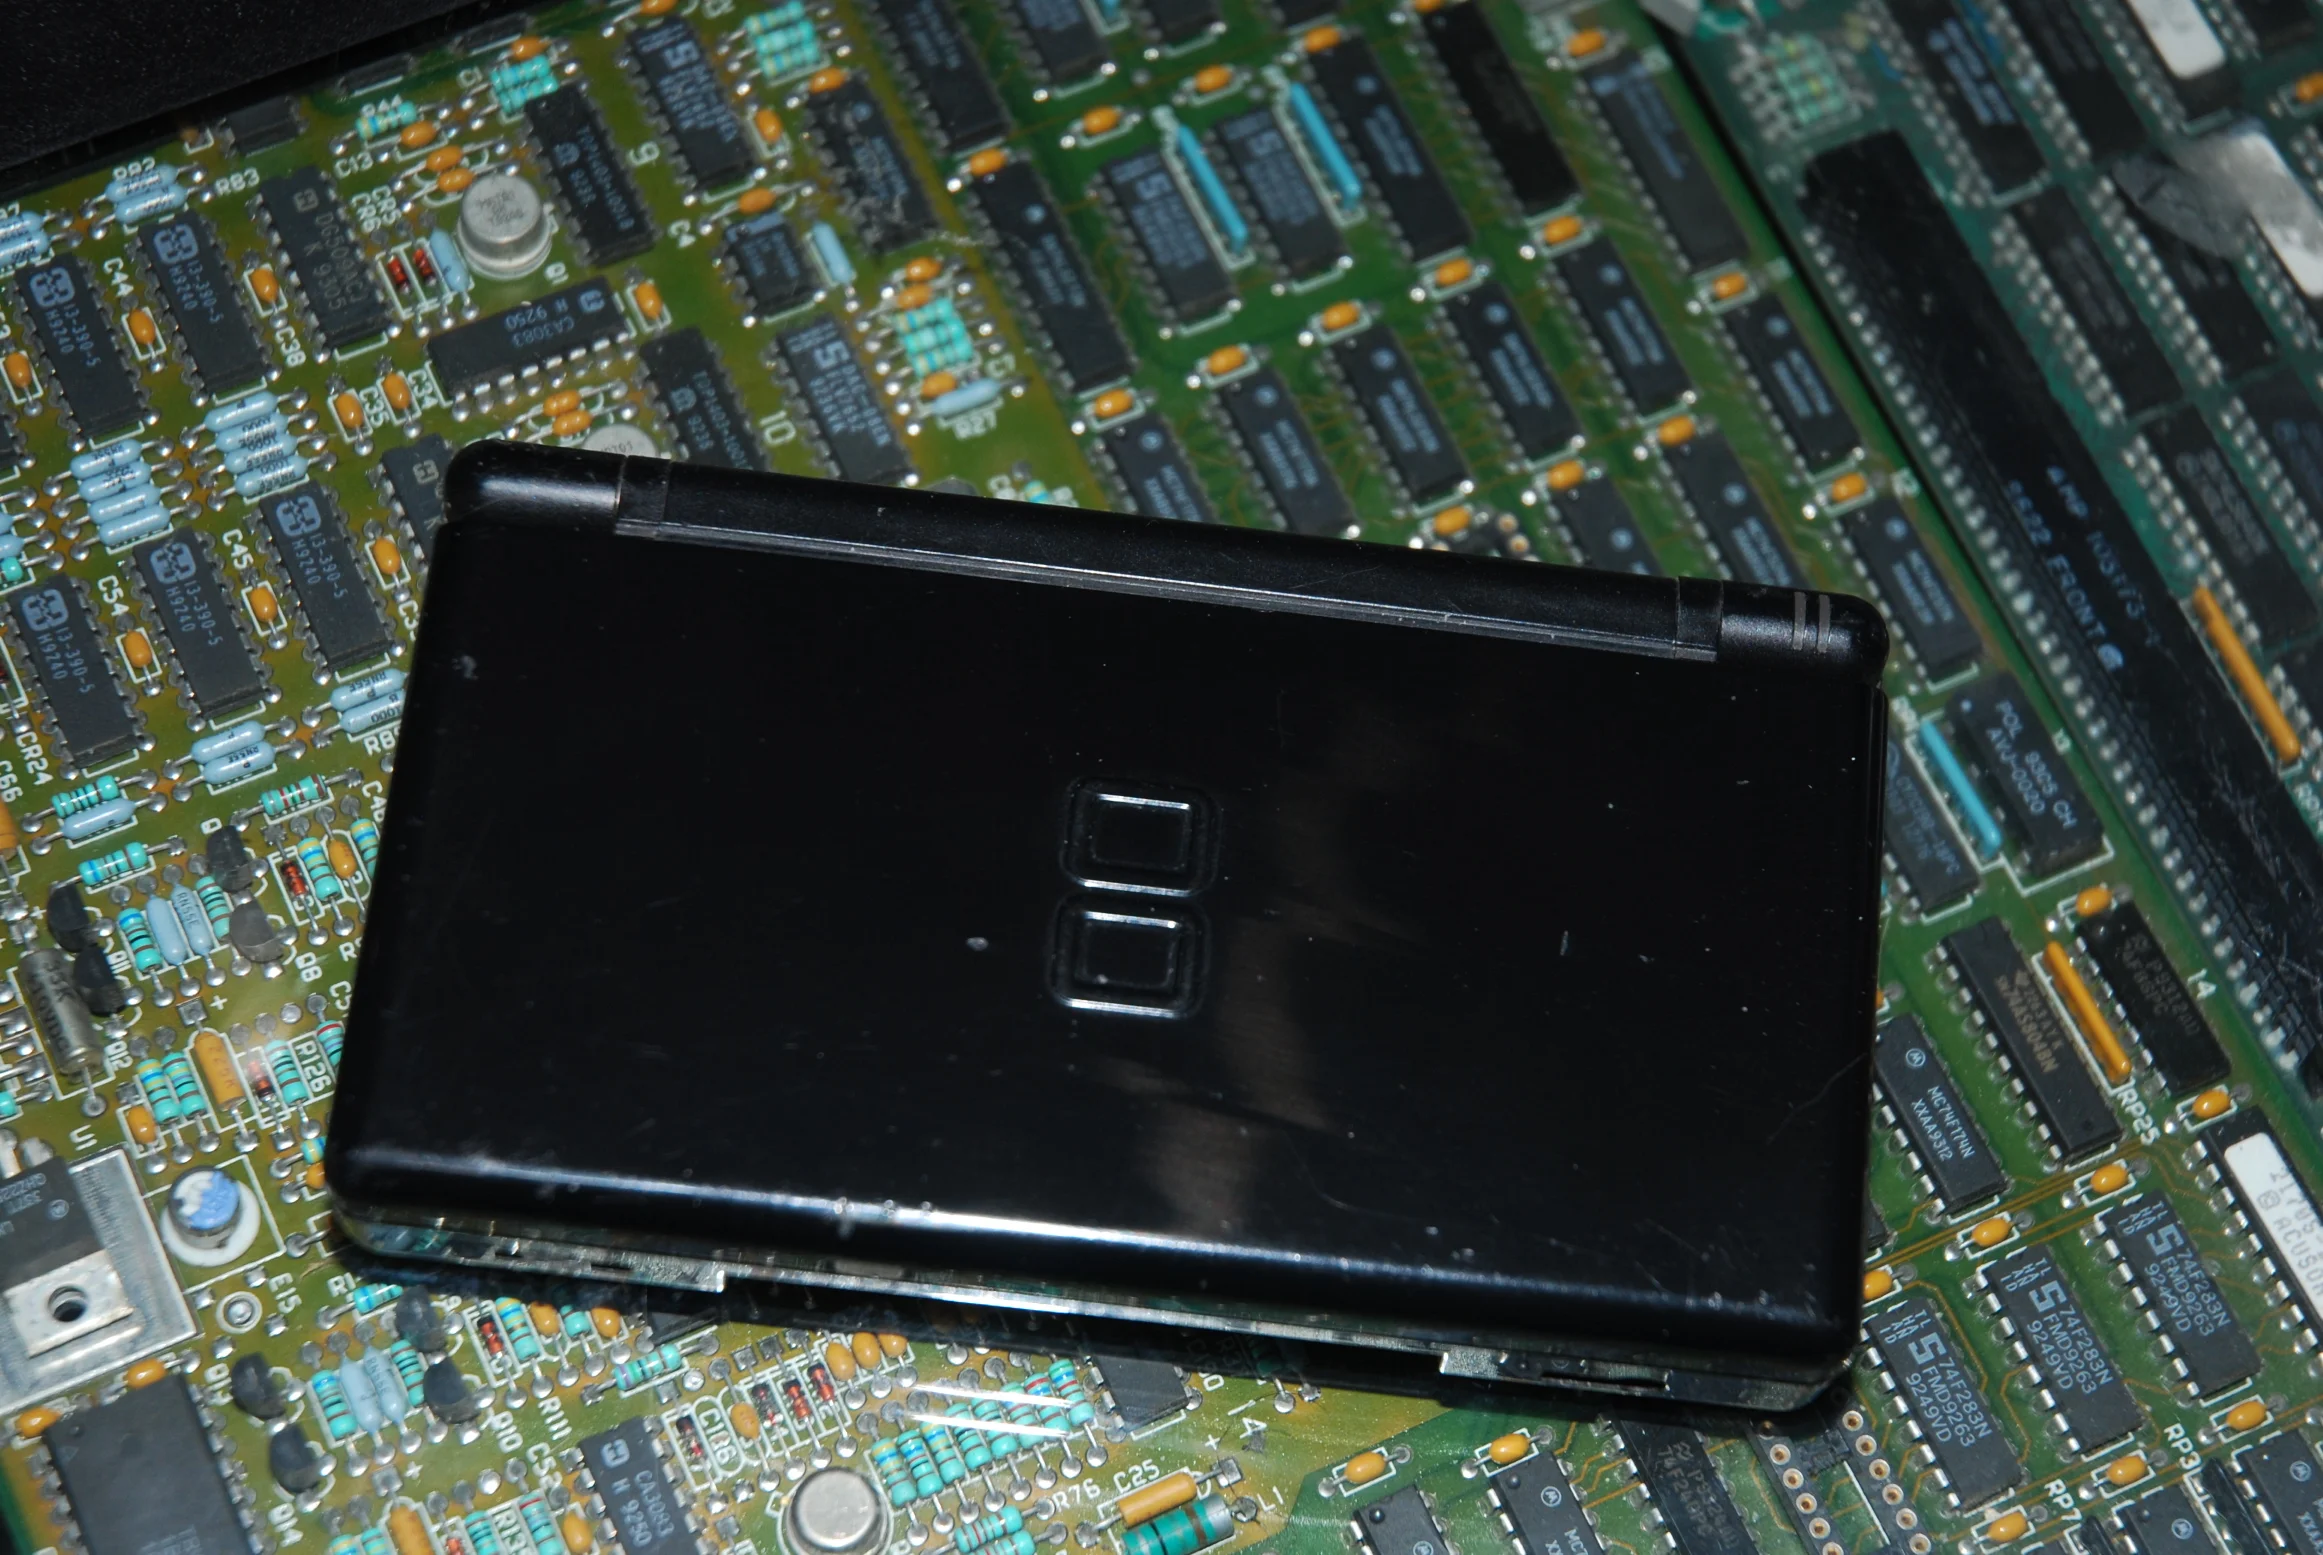  iQue DS Lite Black Console